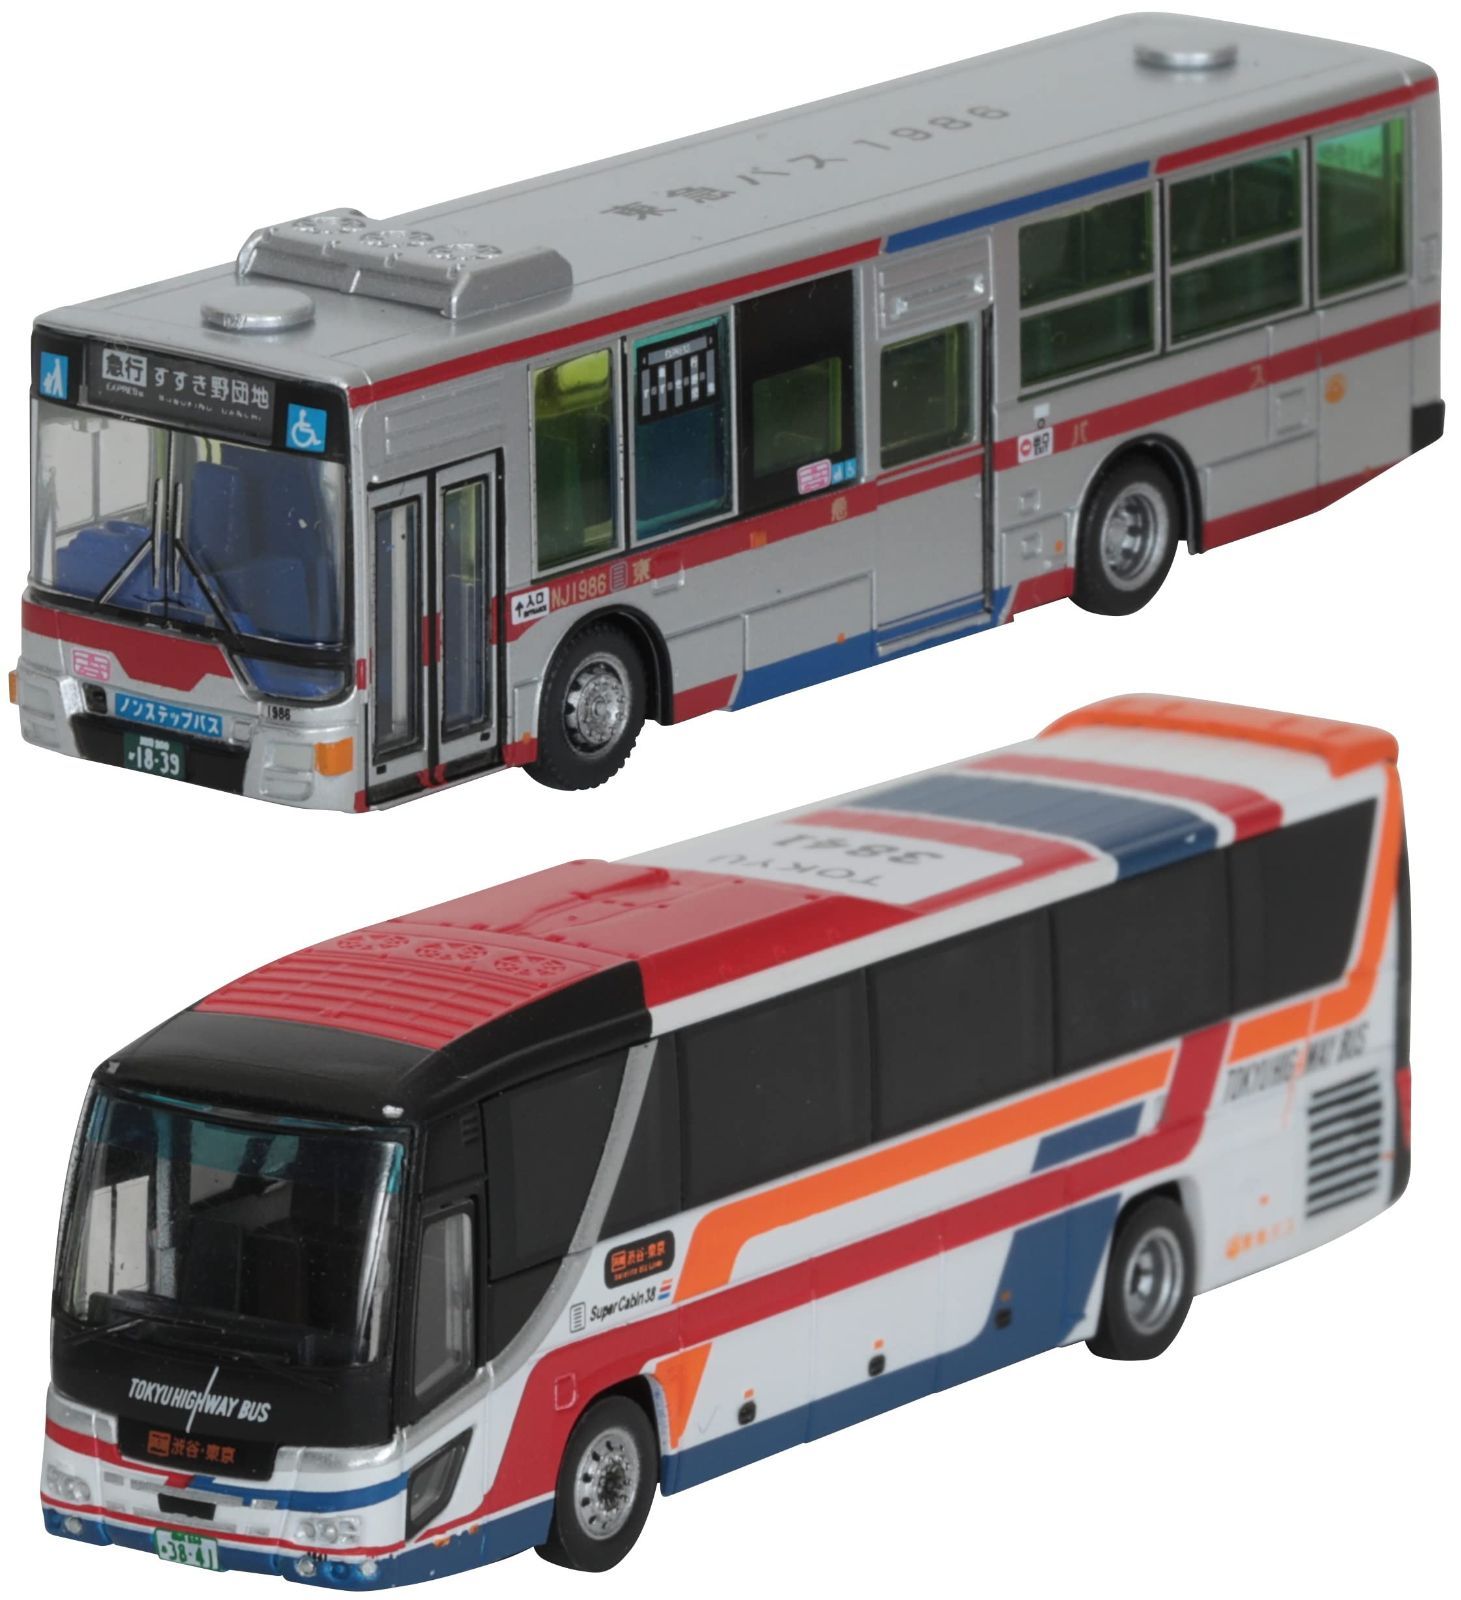 ザ・バスコレクション バスコレ 東急バス 創立30周年記念 2台セット ジオラマ用品 317371